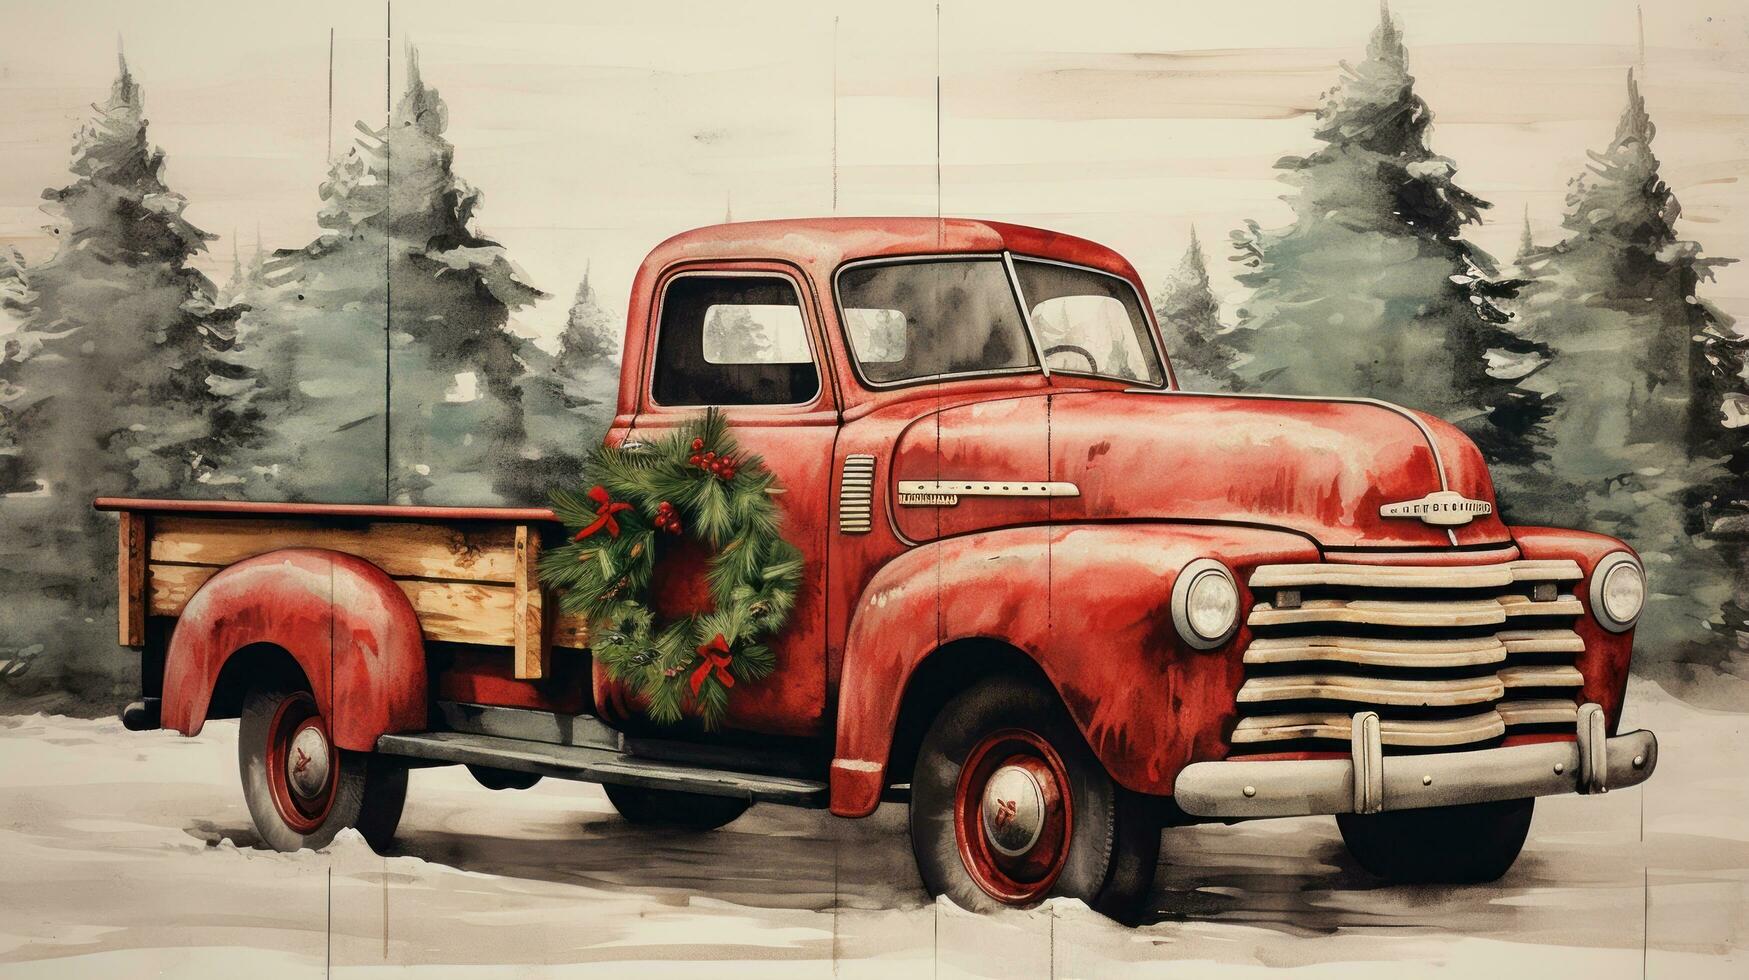 rústico de madeira placa com alegre Natal e vermelho caminhão ilustração foto